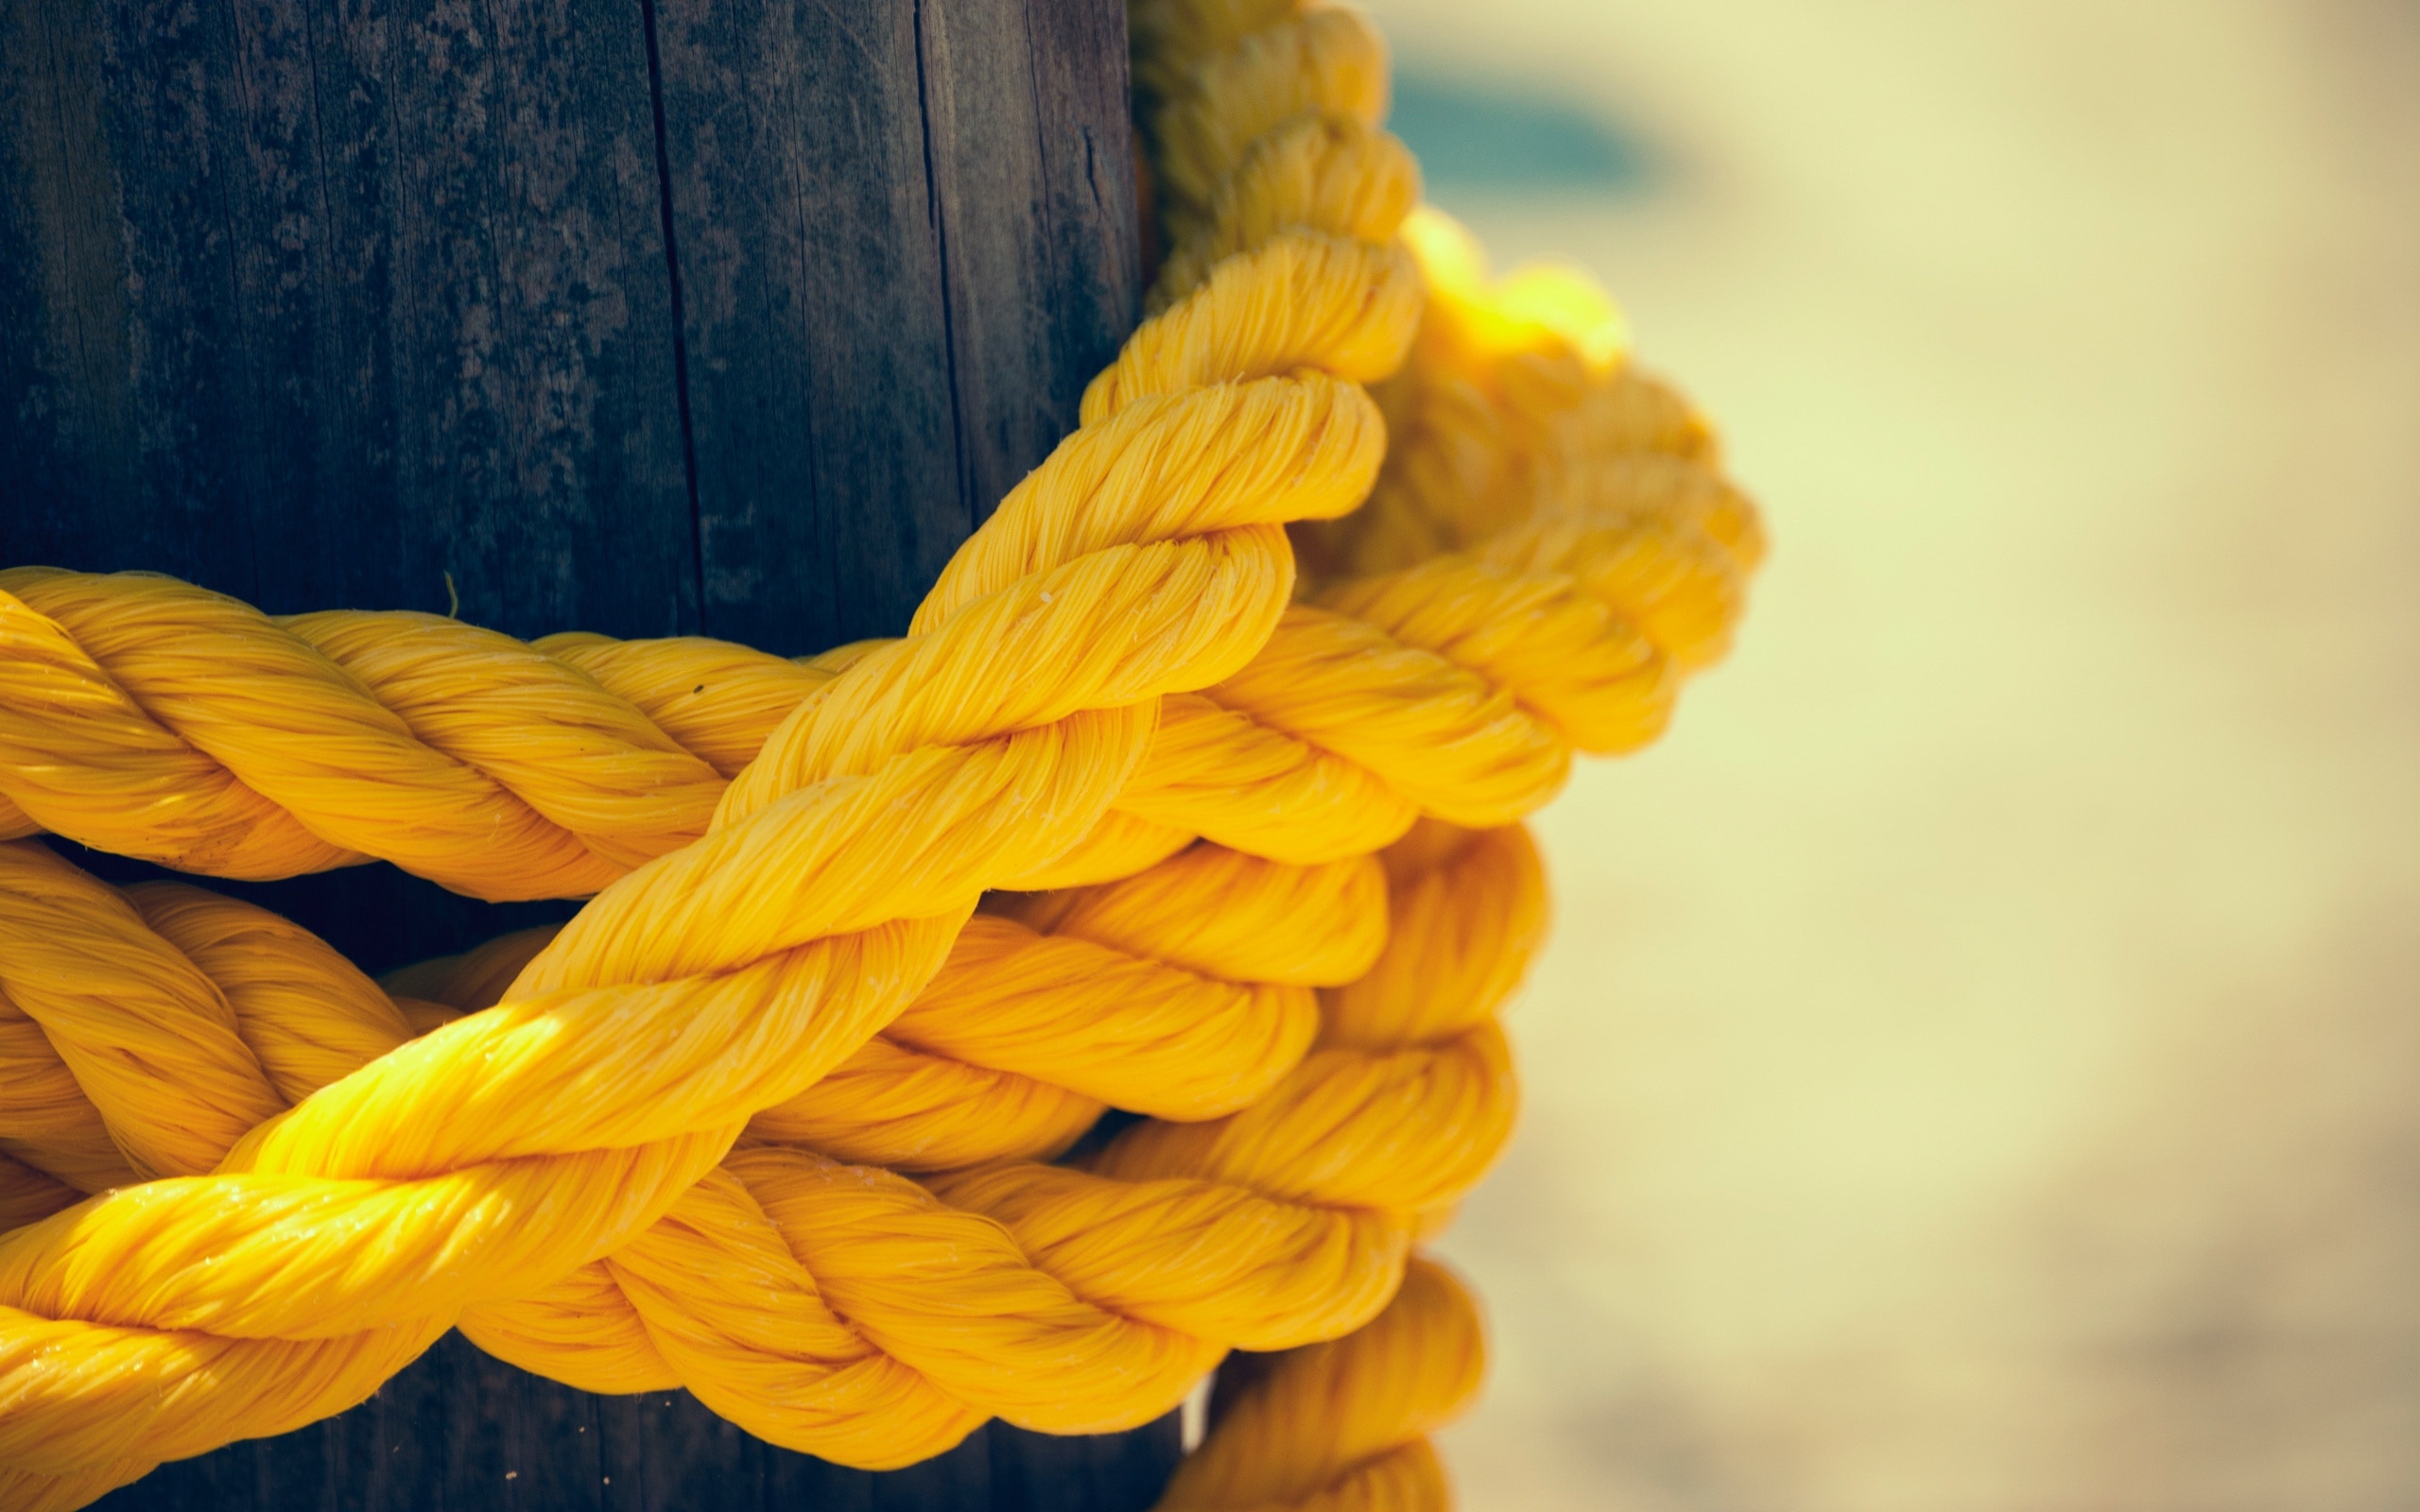 yellow rope